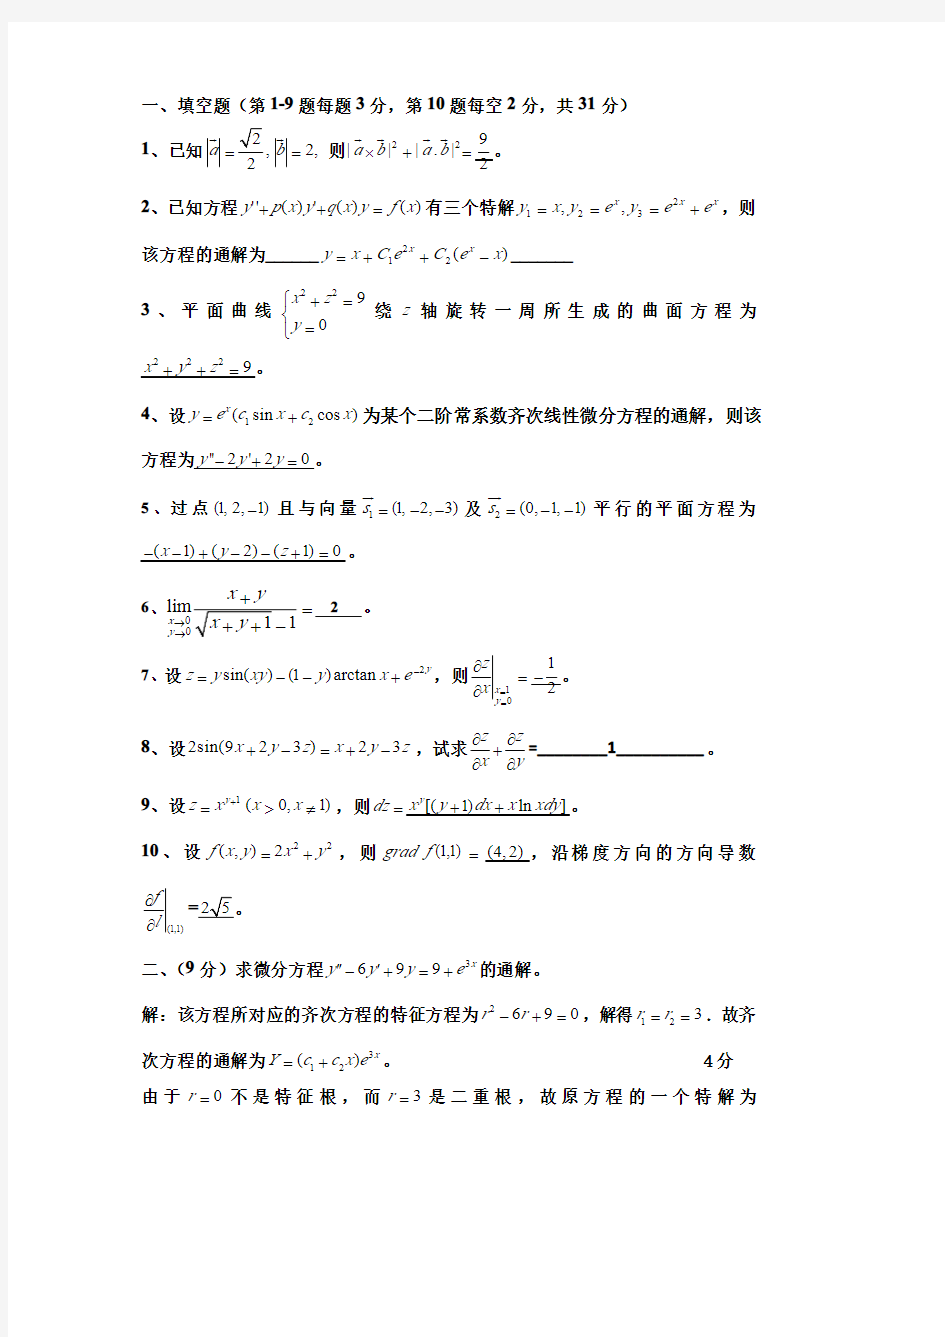 中国矿业大学(北京)2020年高等数学(下)答案(期中测试高等数学单元测试答案)